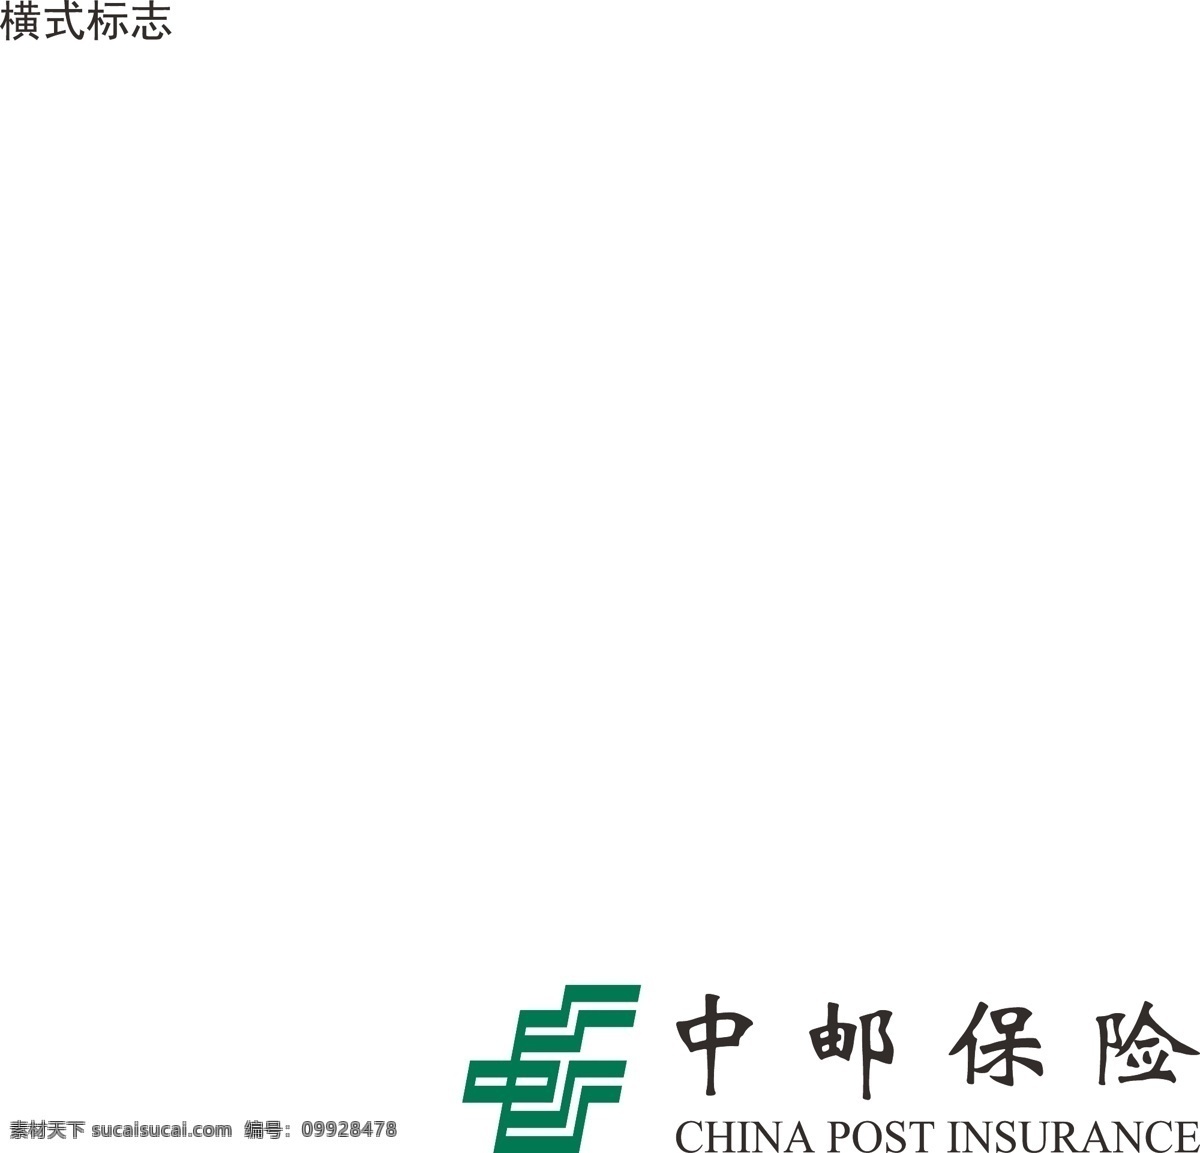 中 邮 保险 logo 中邮保险 企业 商业 商标 广告 中国邮政 中邮 标志 标识 金融 logo设计